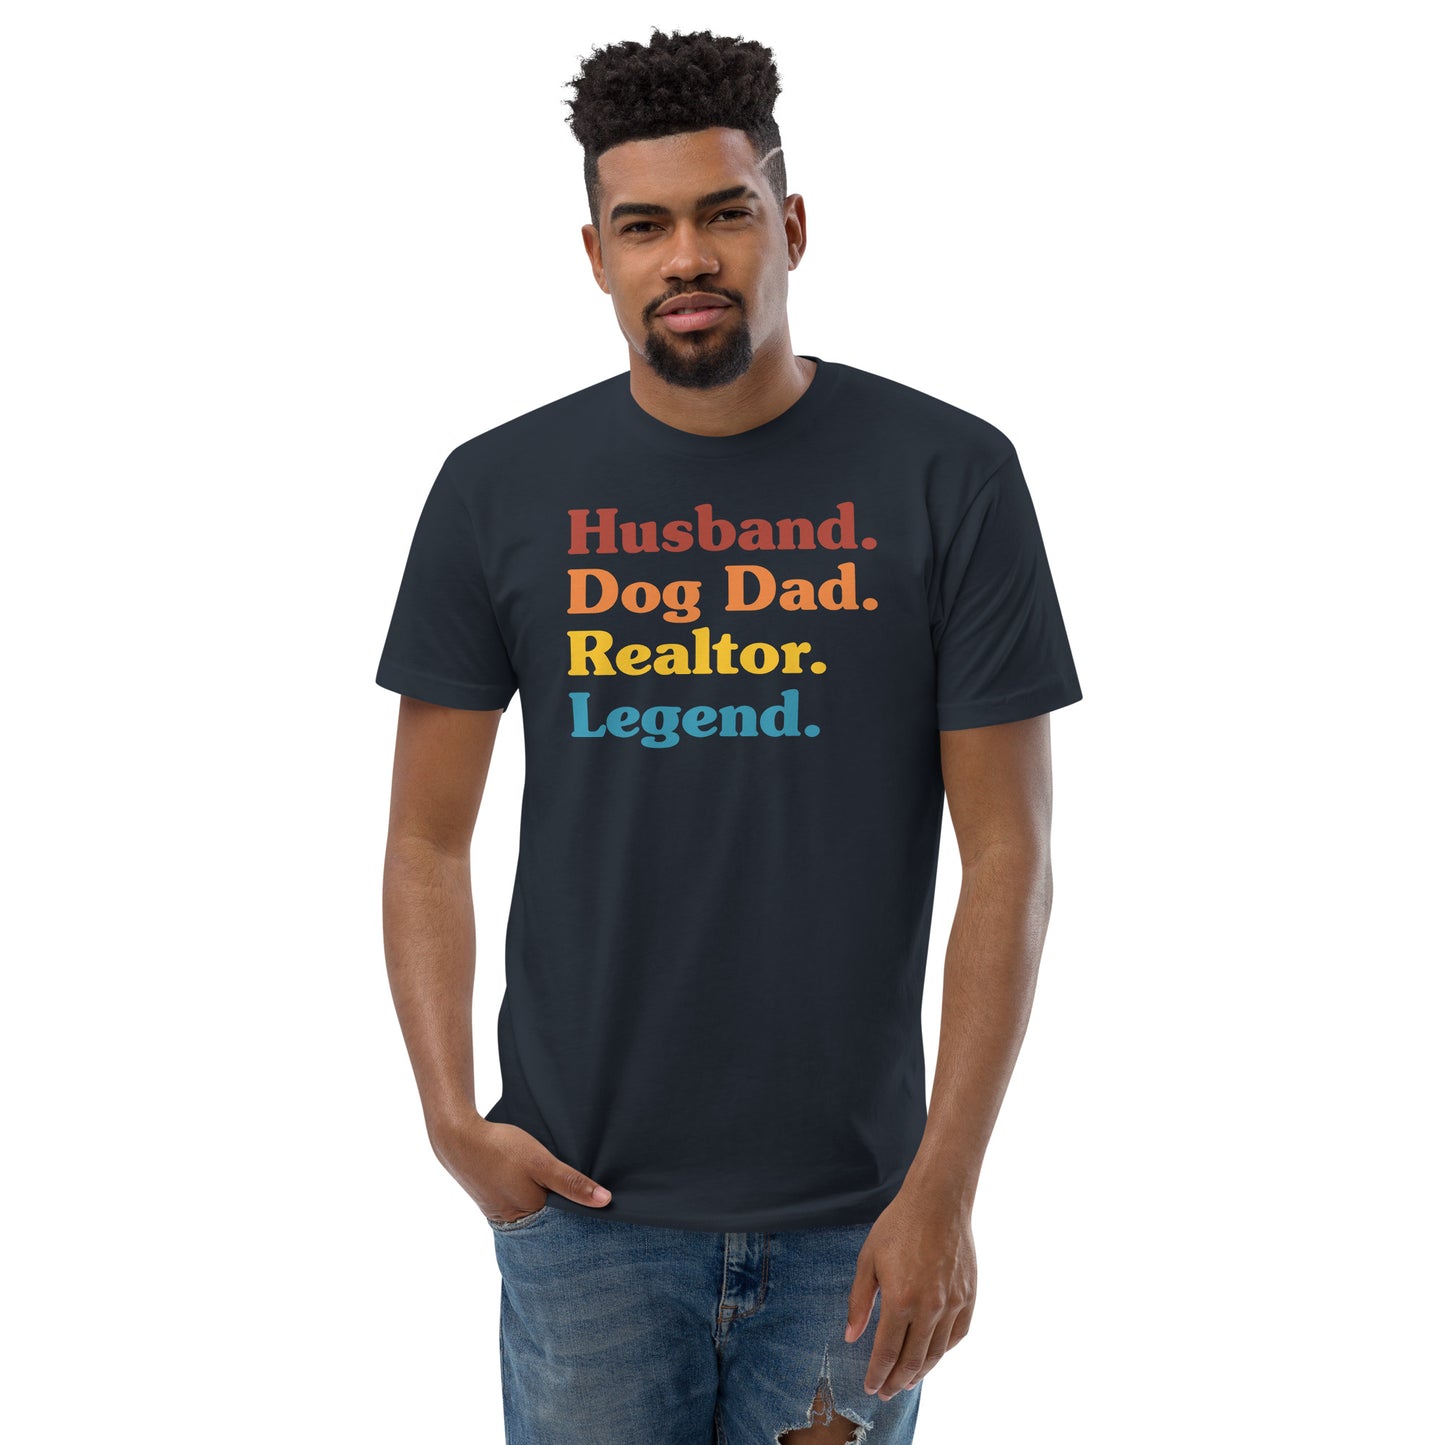 Short Sleeve T-shirt "Husband. Dog Dad. Realtor. Legend."